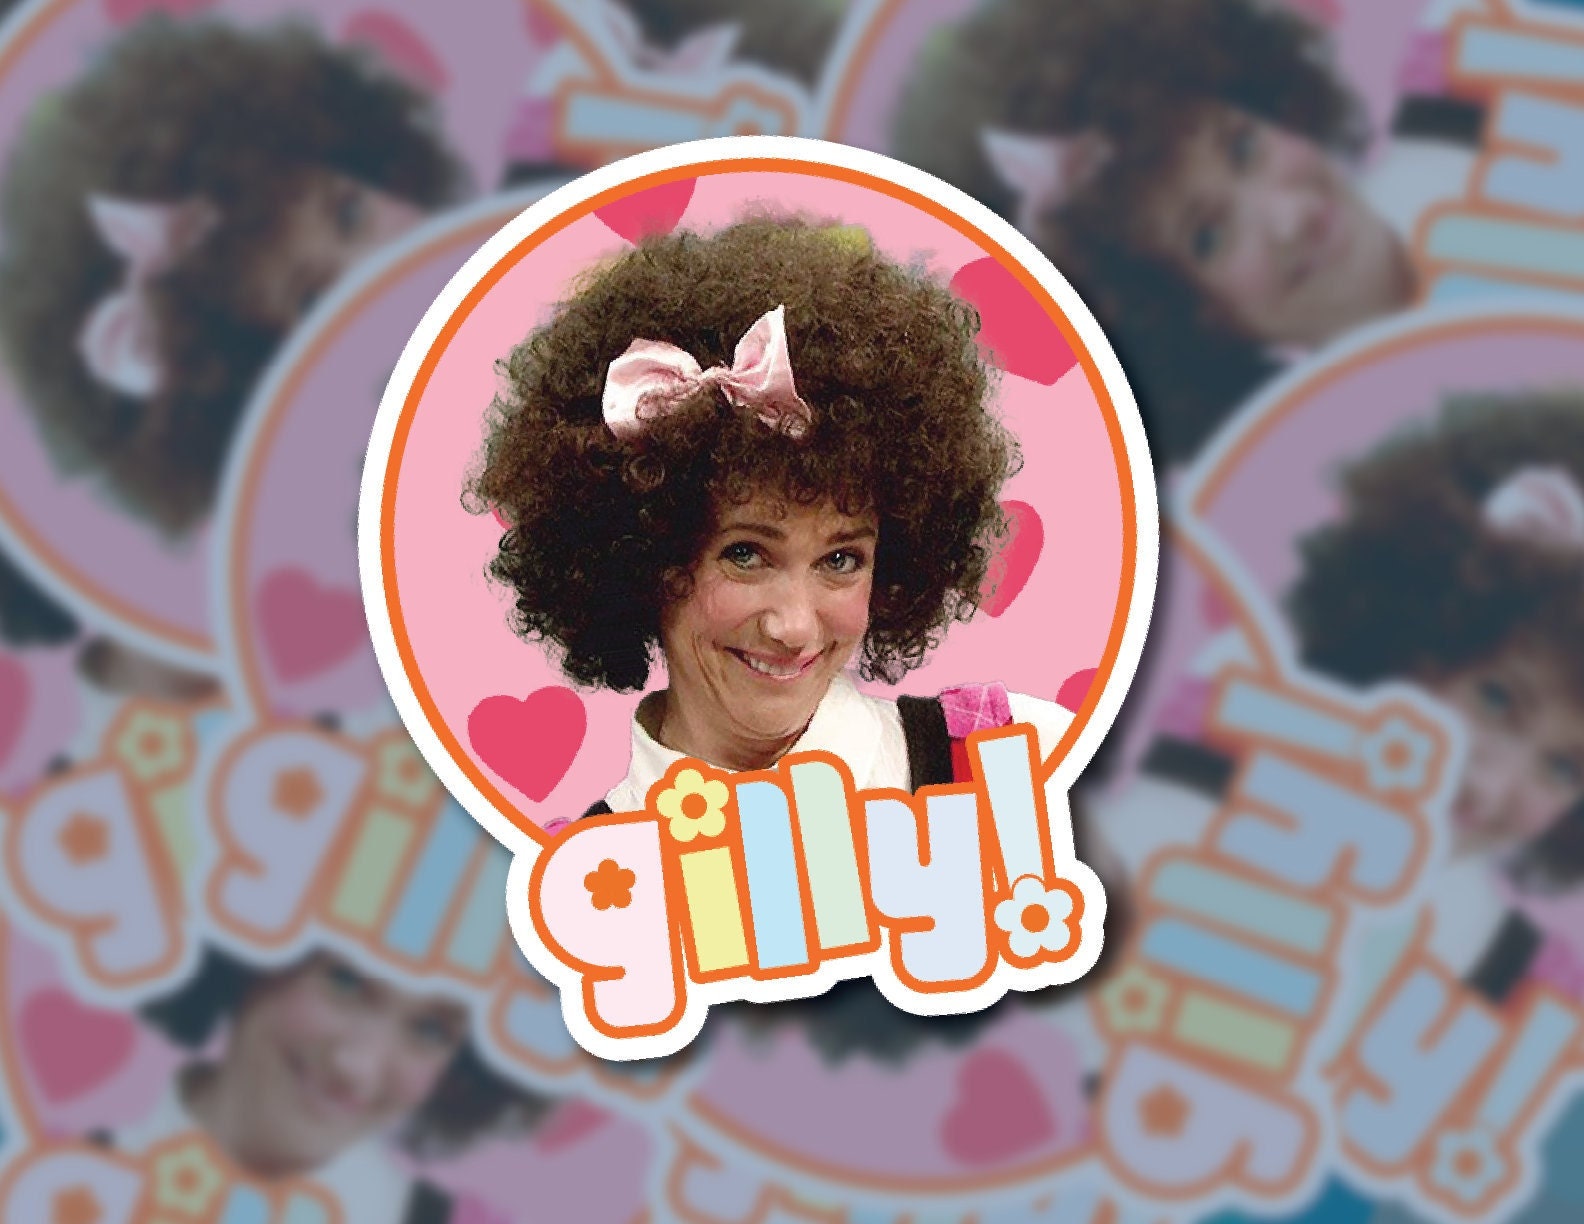 It's Gilly Funny SNL Sticker Waterproof 